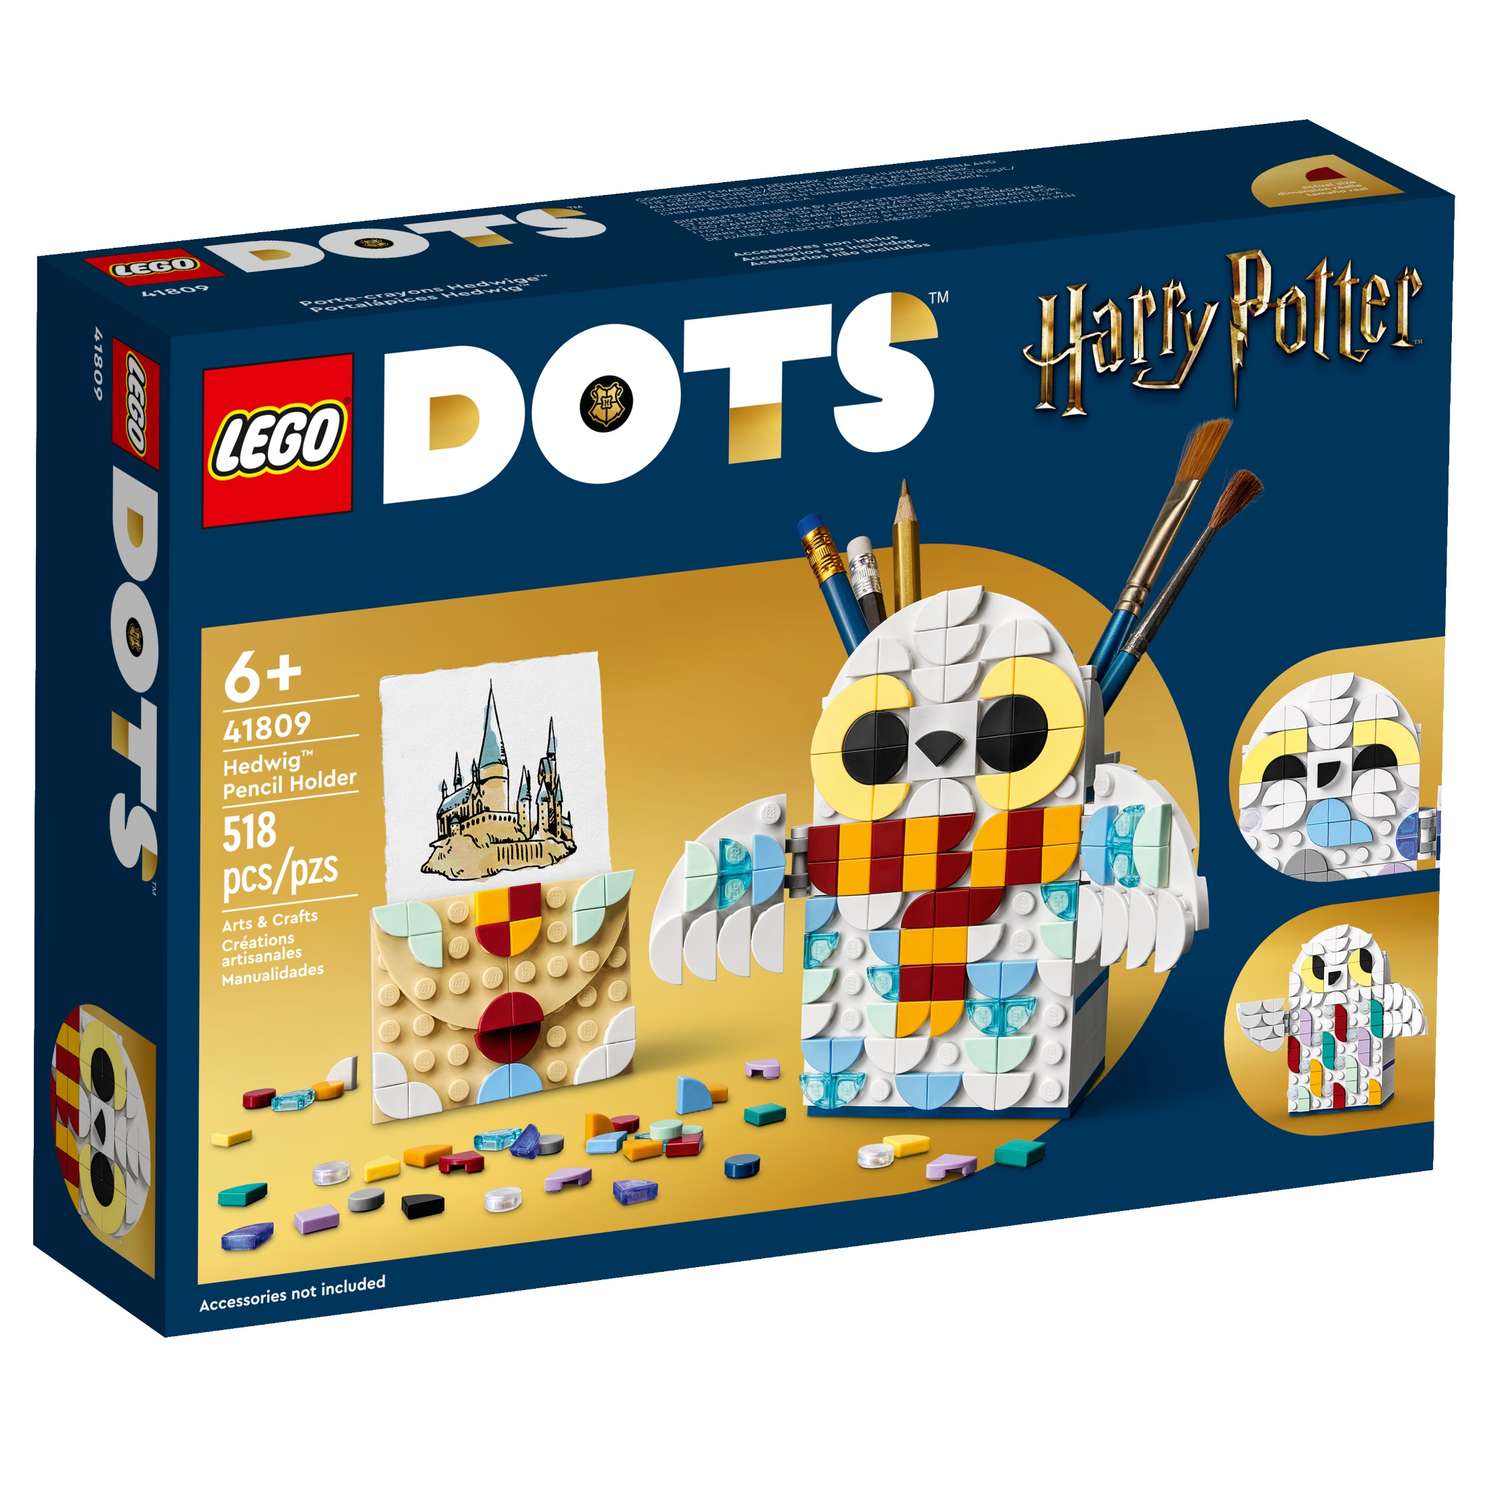 Конструктор LEGO DOTs Hedwig Pencil Holder 41809 - фото 1